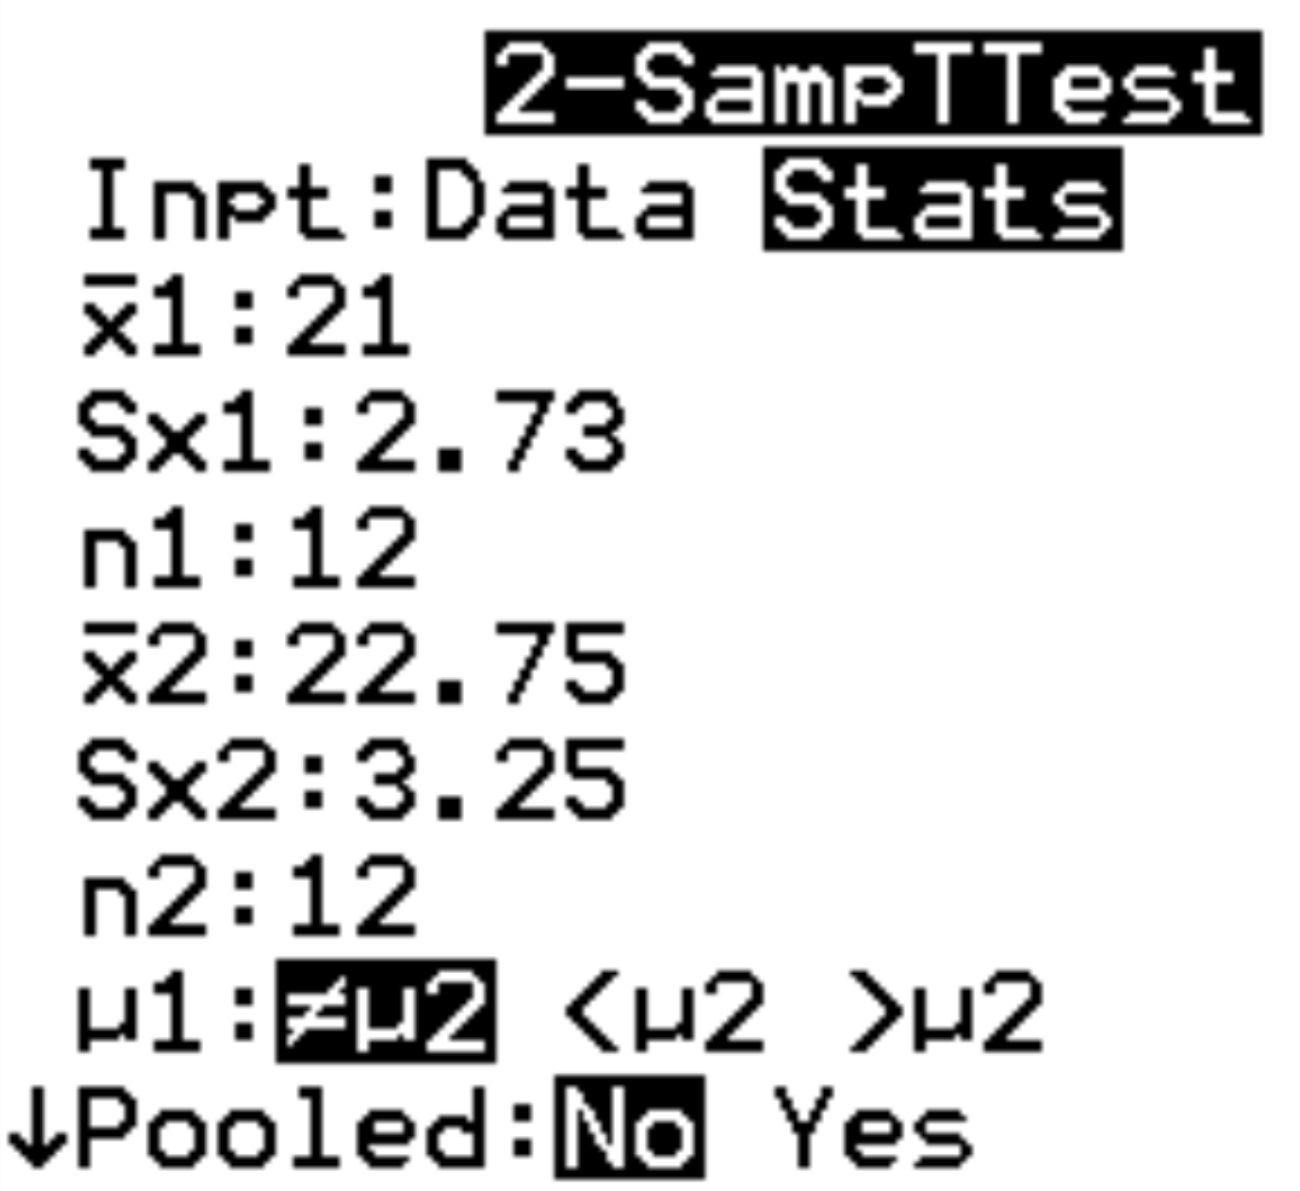 Dois exemplos de teste t em uma calculadora TI-84